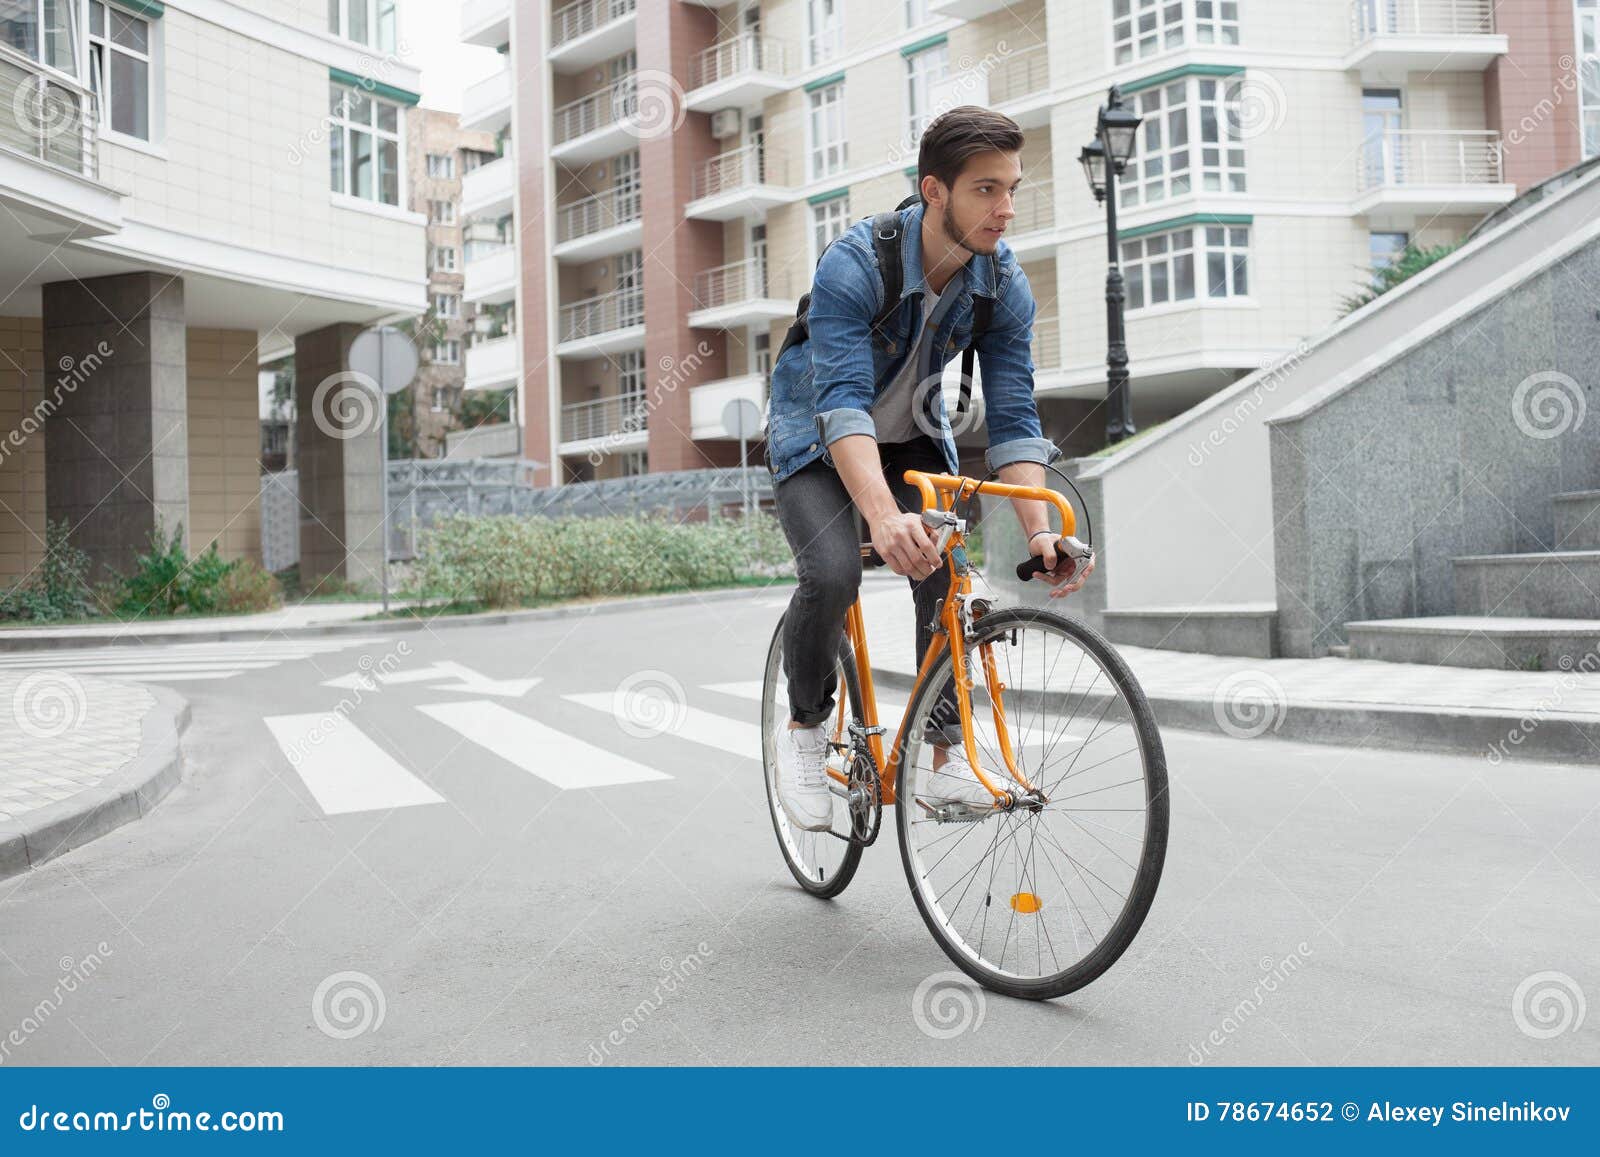 De kerel in denimjasje gaat naar school op fiets Fietsers de weg in de stad. Een kerel in een blauw denimjasje gaat naar school op een oranje fiets Fietsers op de weg in de stad Modieuze student met een rugzak